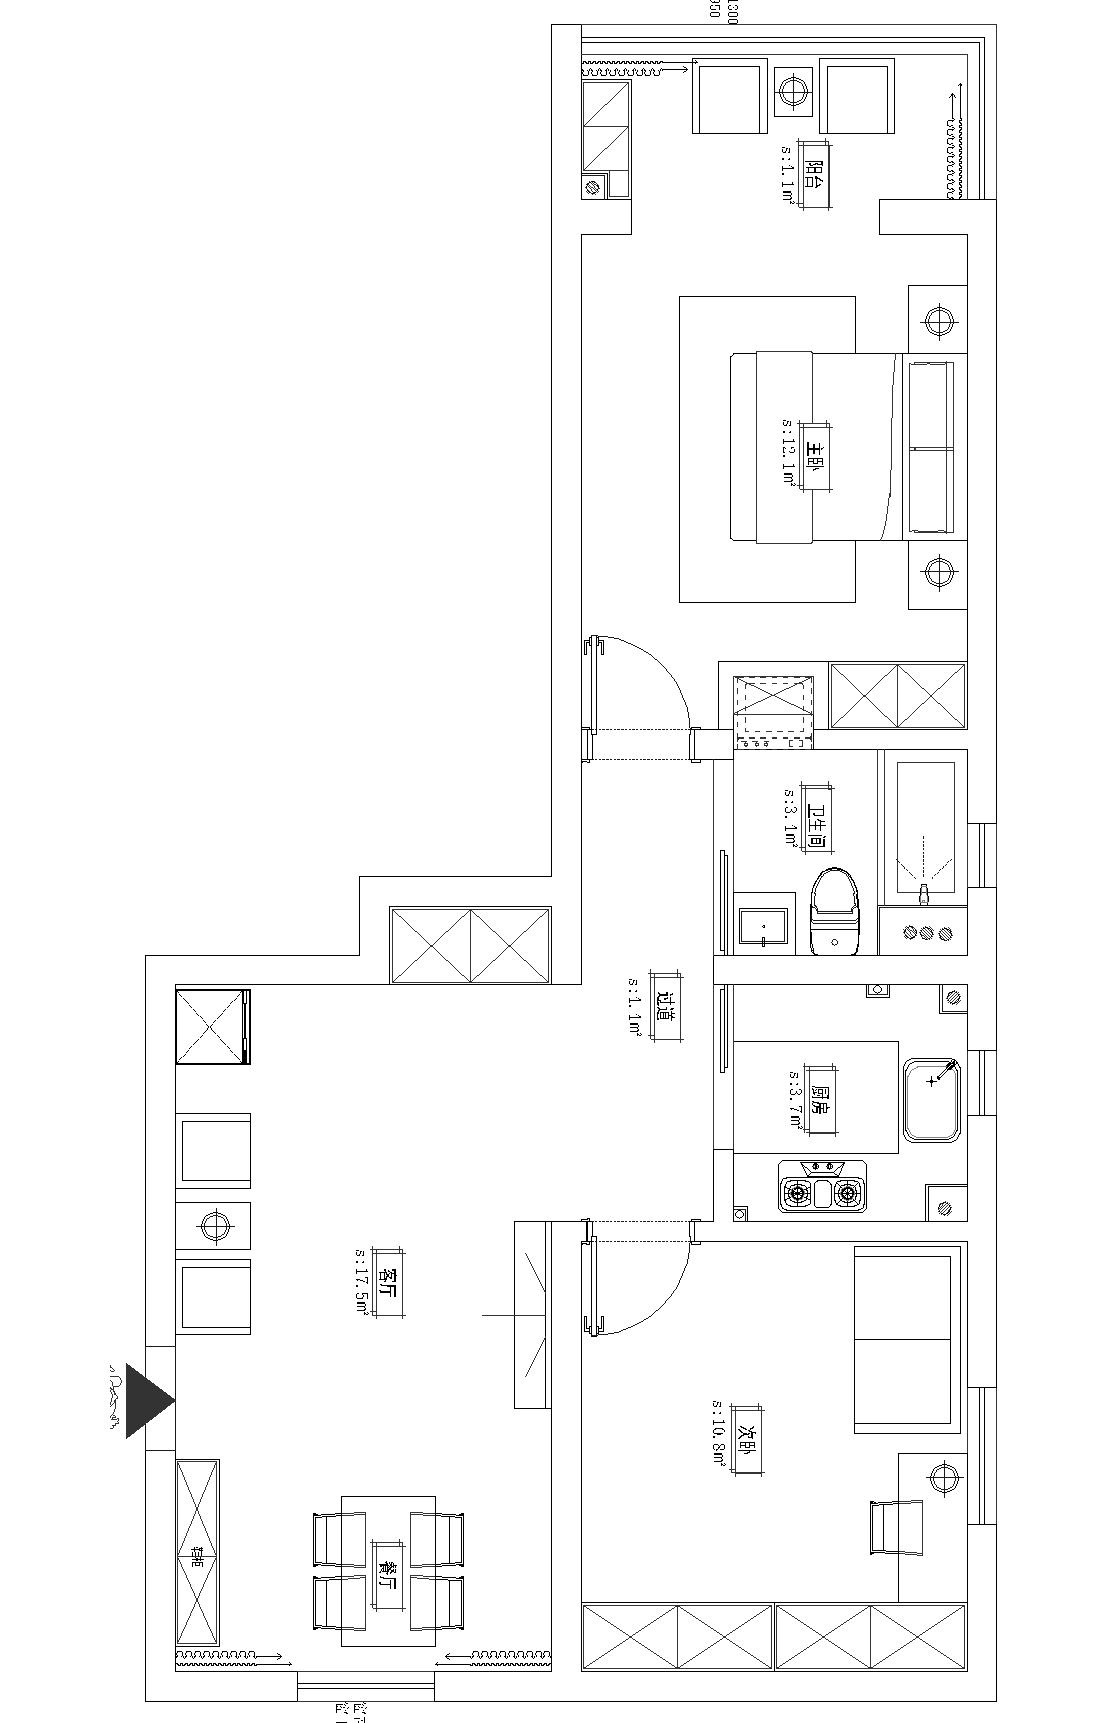 申通公寓戶型分析圖